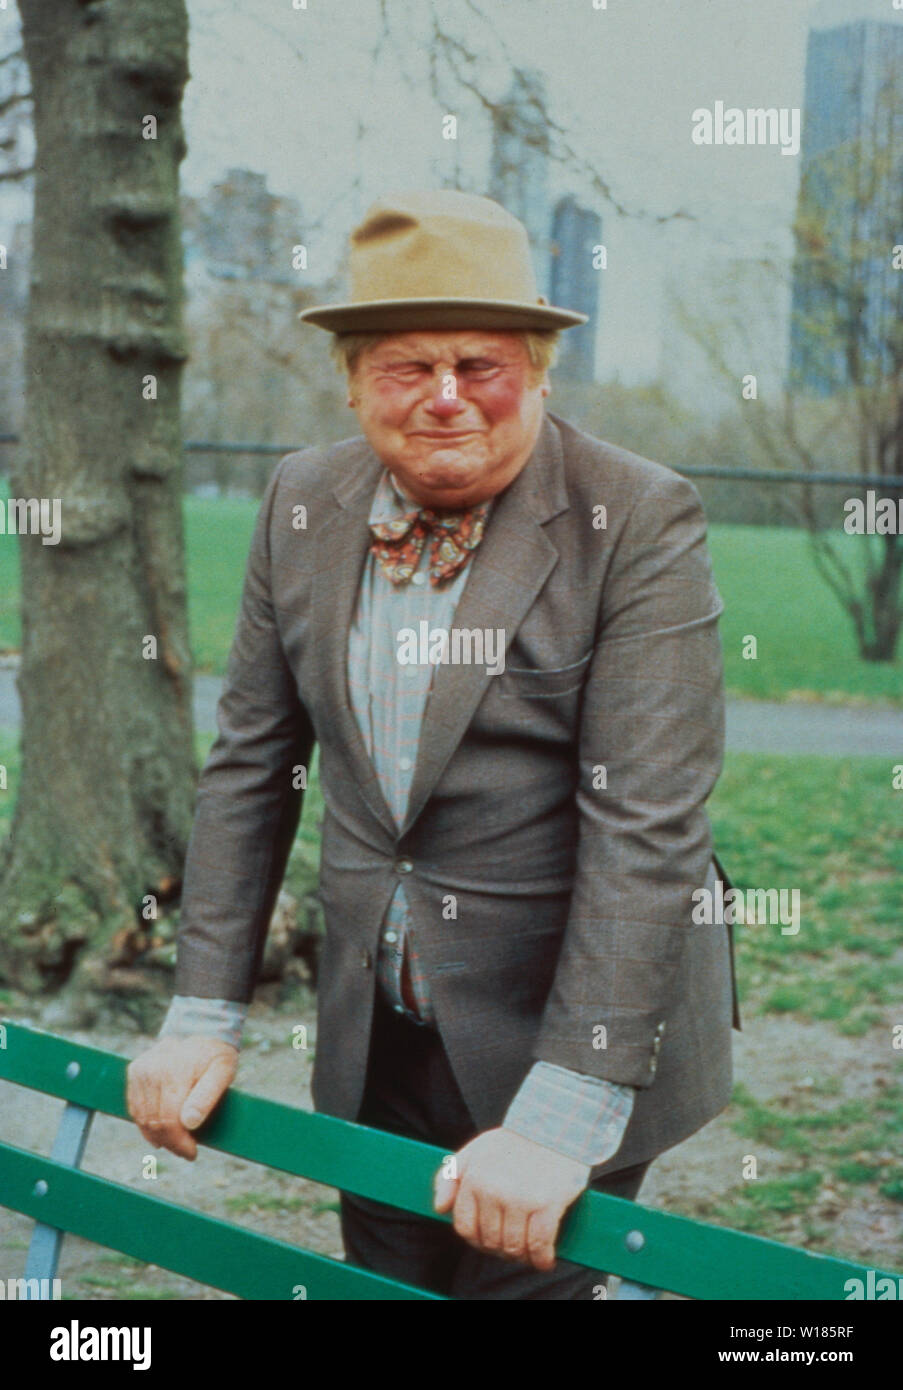 Benny Hill, britischer Sänger, Komiker und Schauspieler, Deutschland ca. 1979. British singer, comedian and actor Benny Hill, Germany ca. 1979. Stock Photo